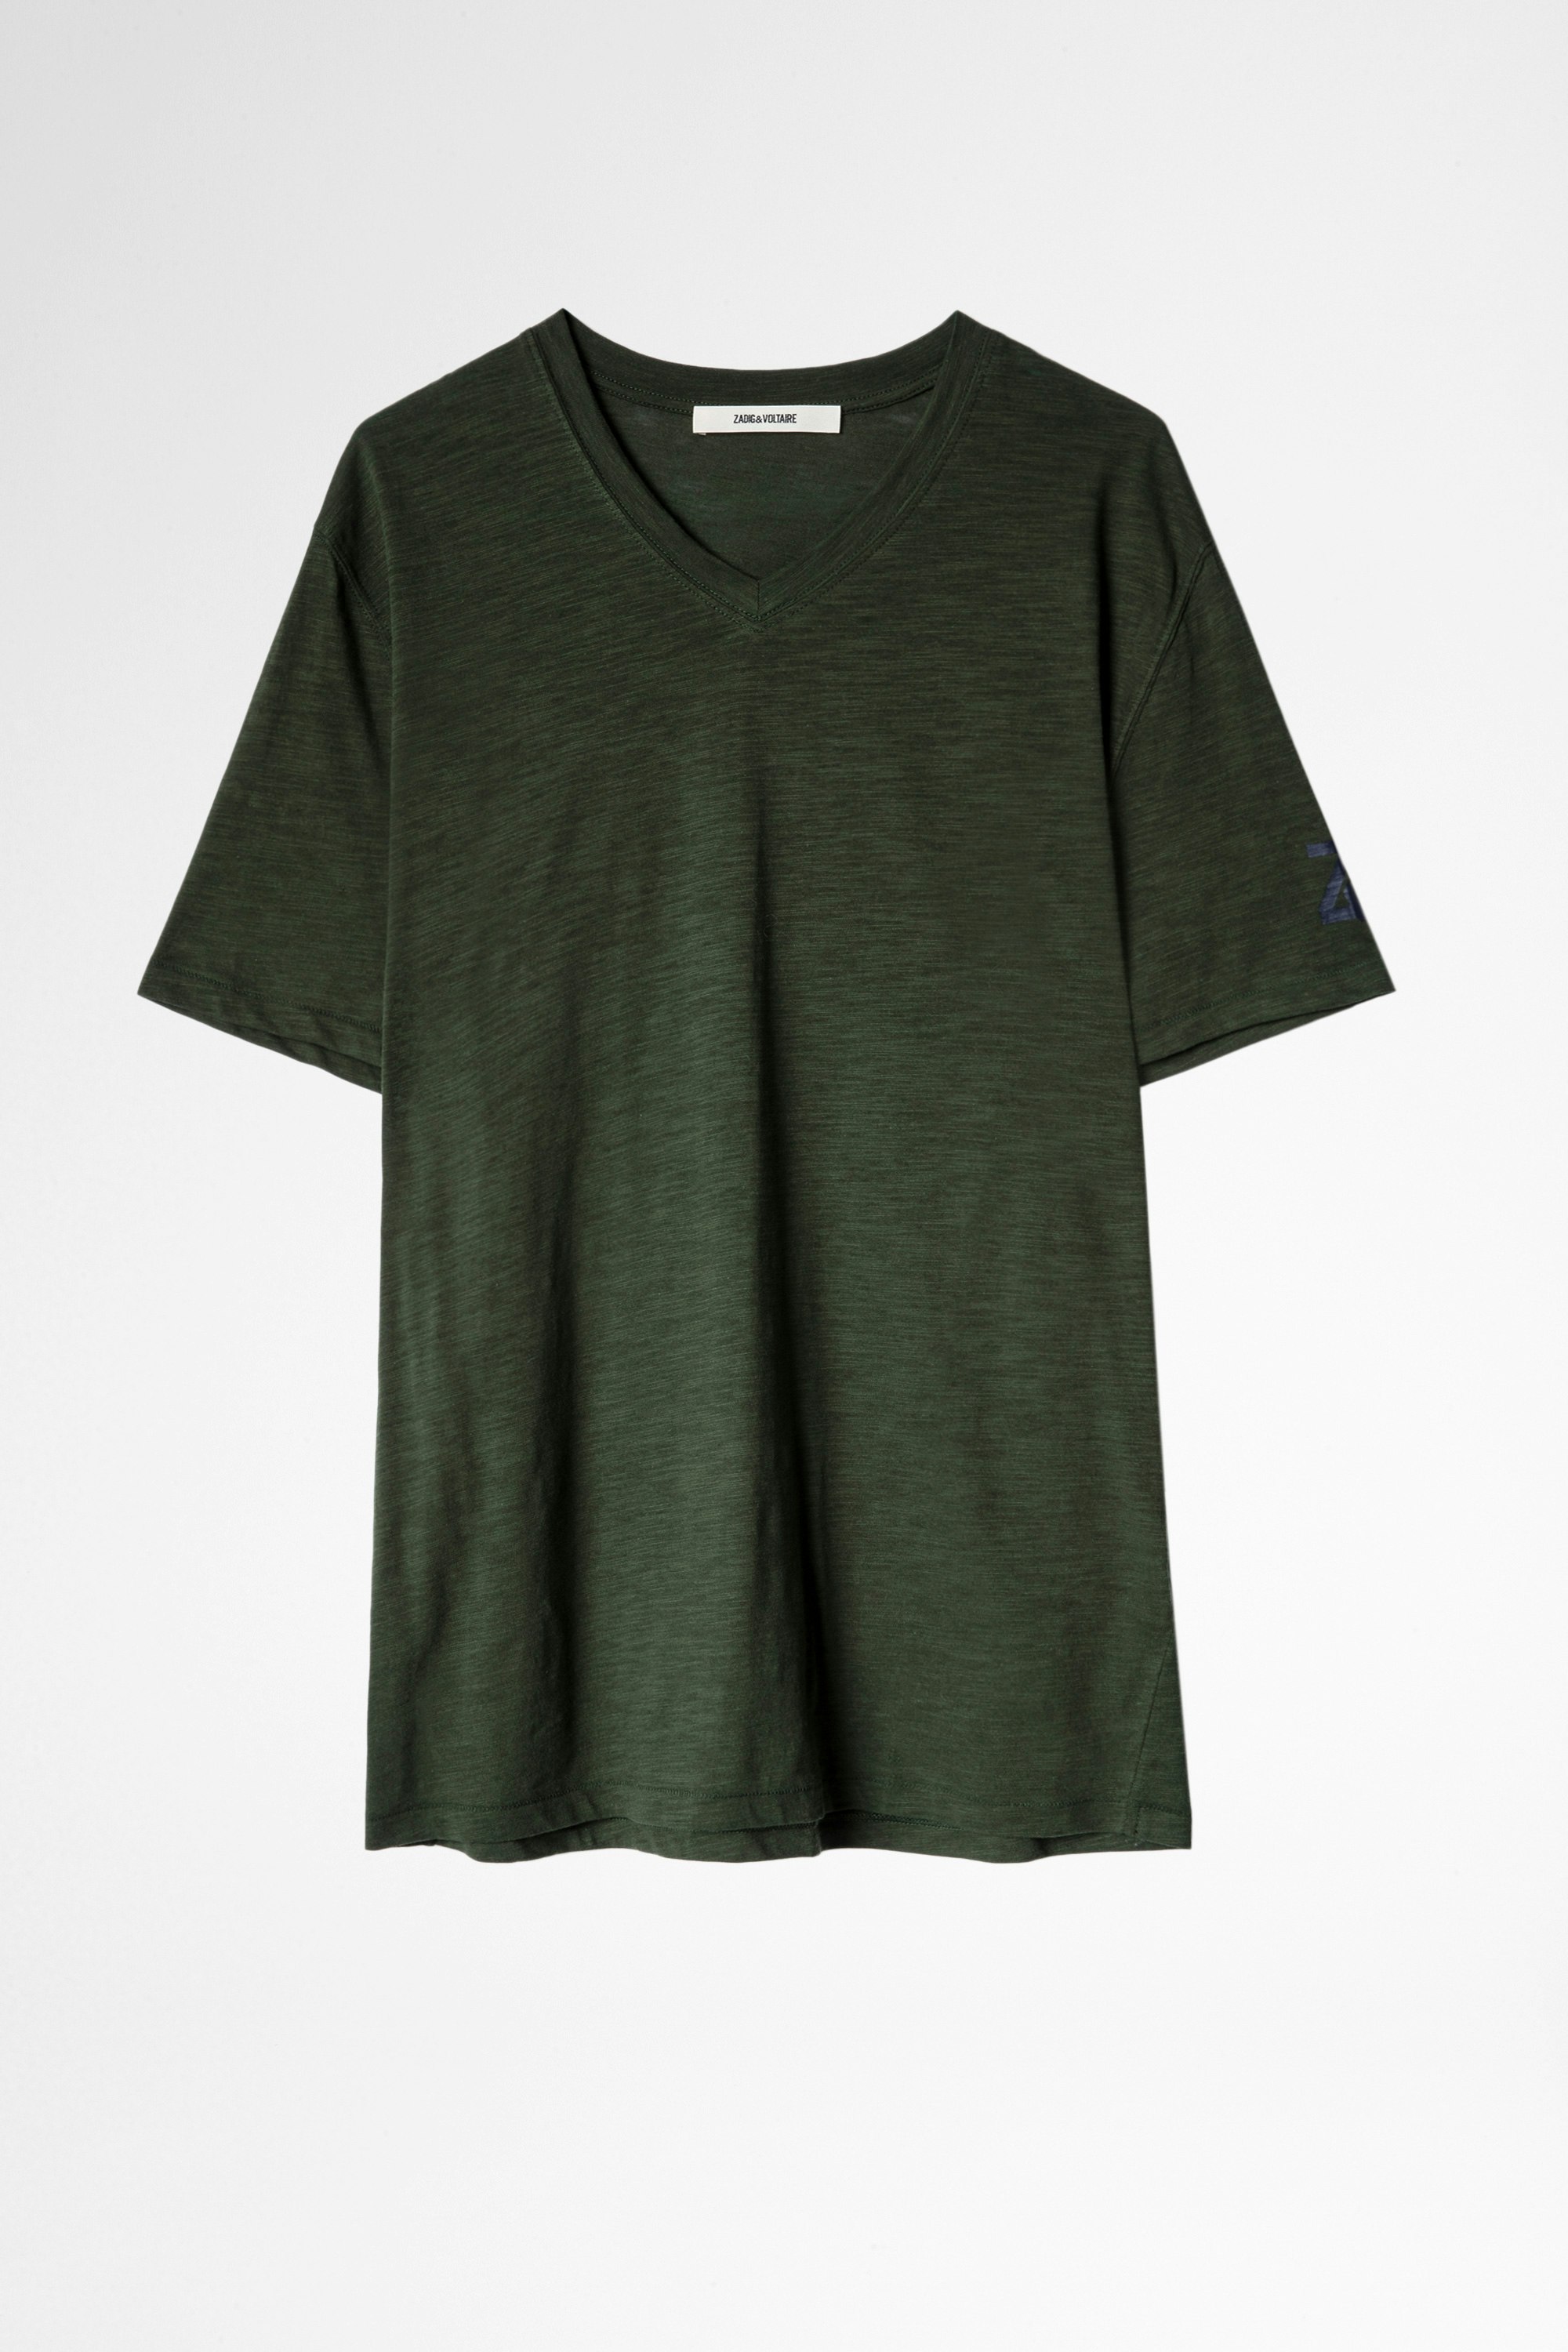 Stocky T-shirt Men’s khaki cotton T-shirt